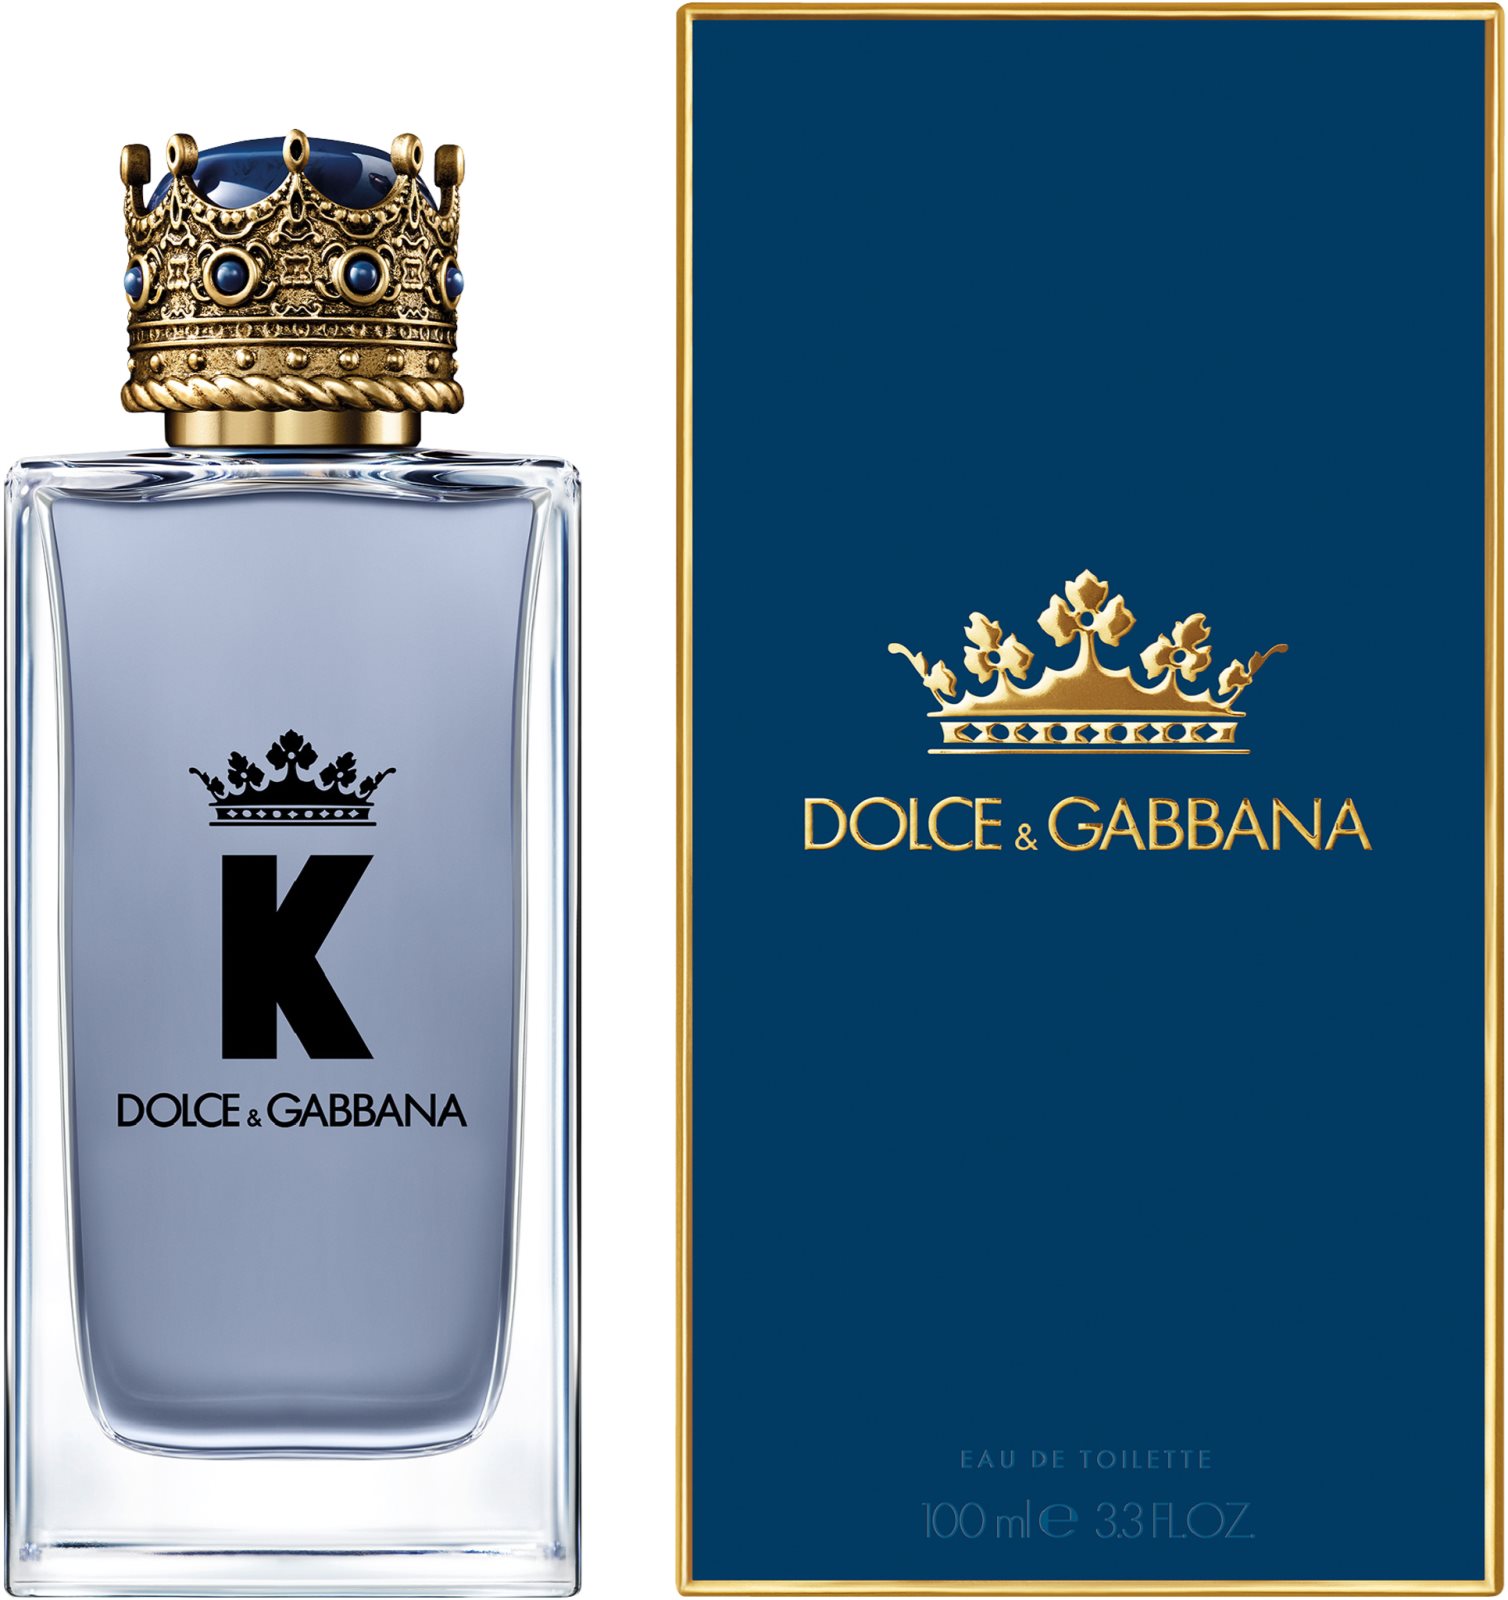 Dolce & Gabbana: K by Dolce & Gabbana